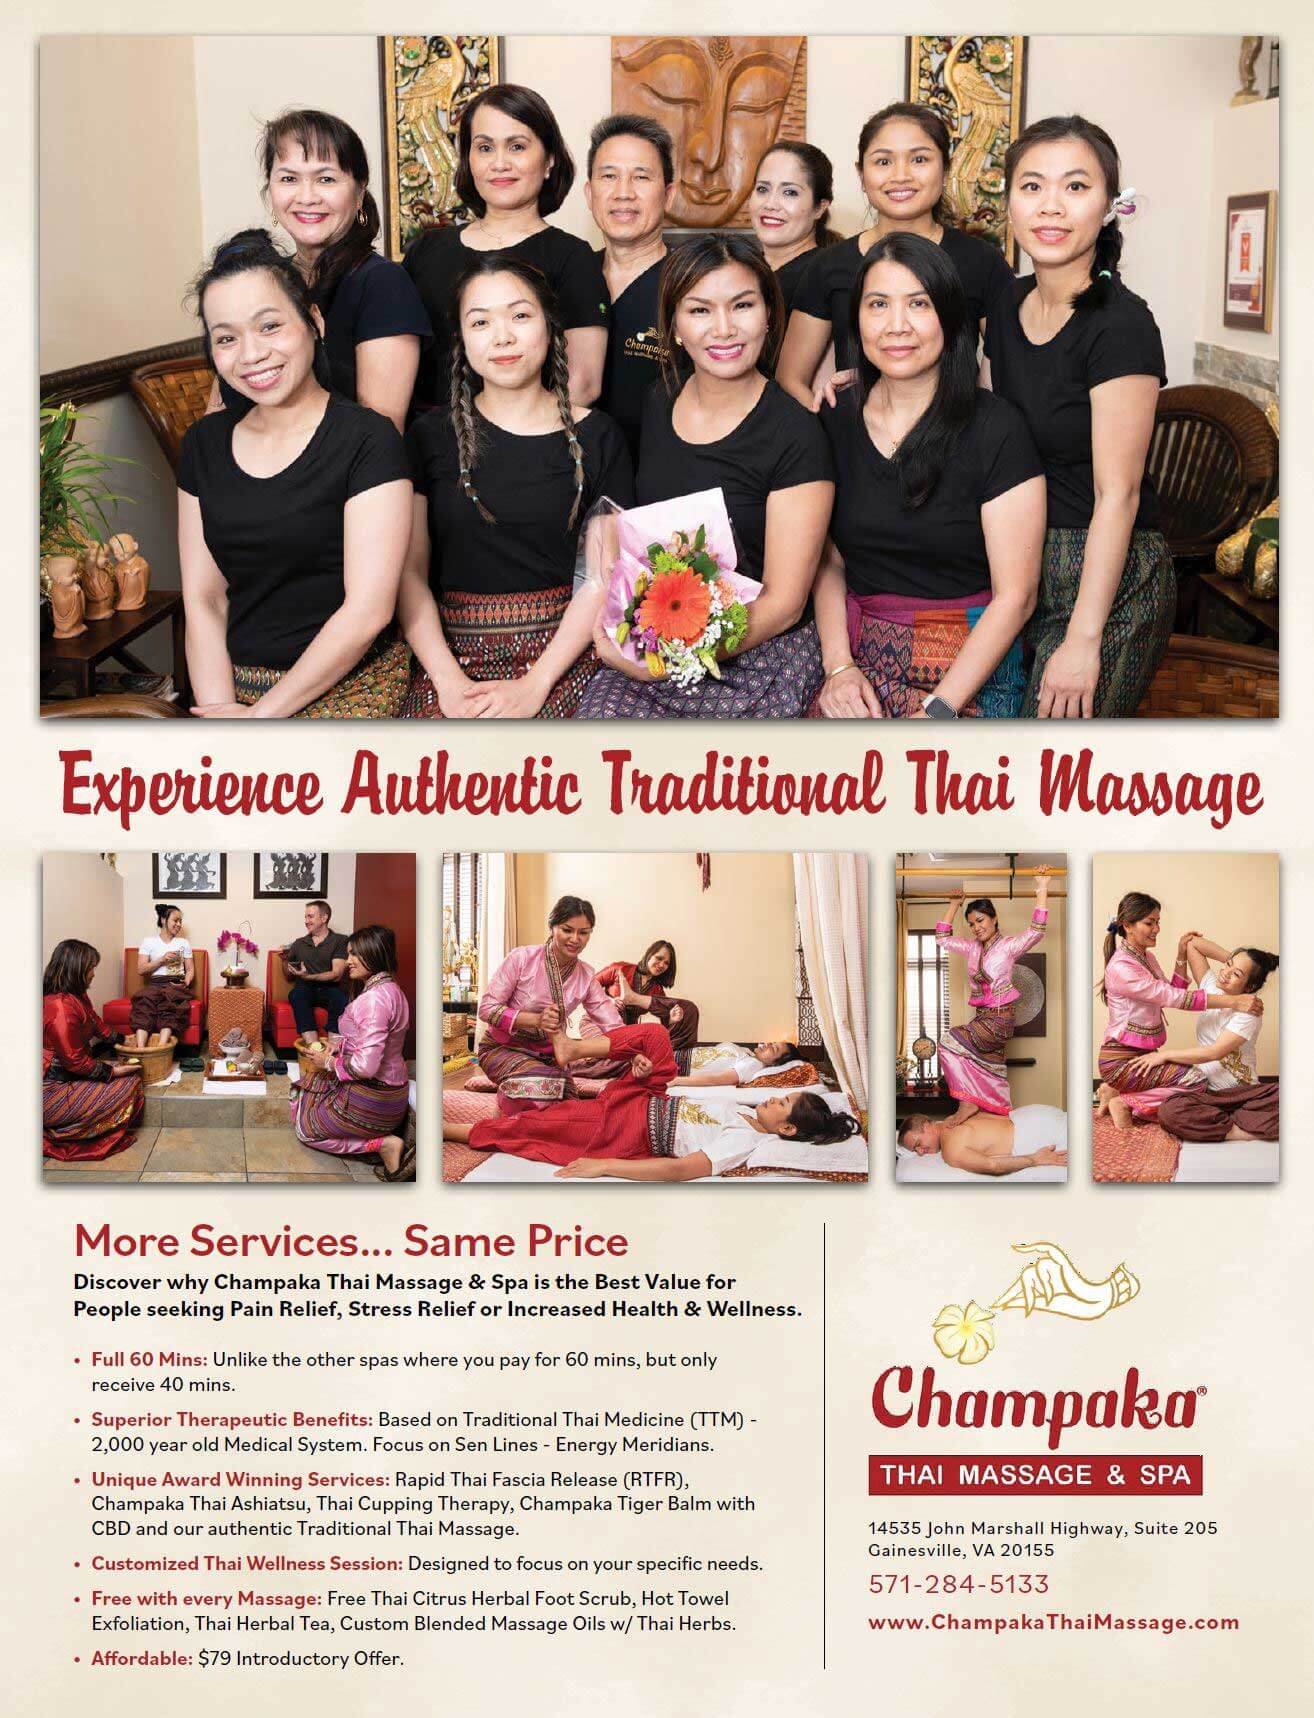 Northern Virginia Best Massage Spas — Champaka Thai Massage And Spa